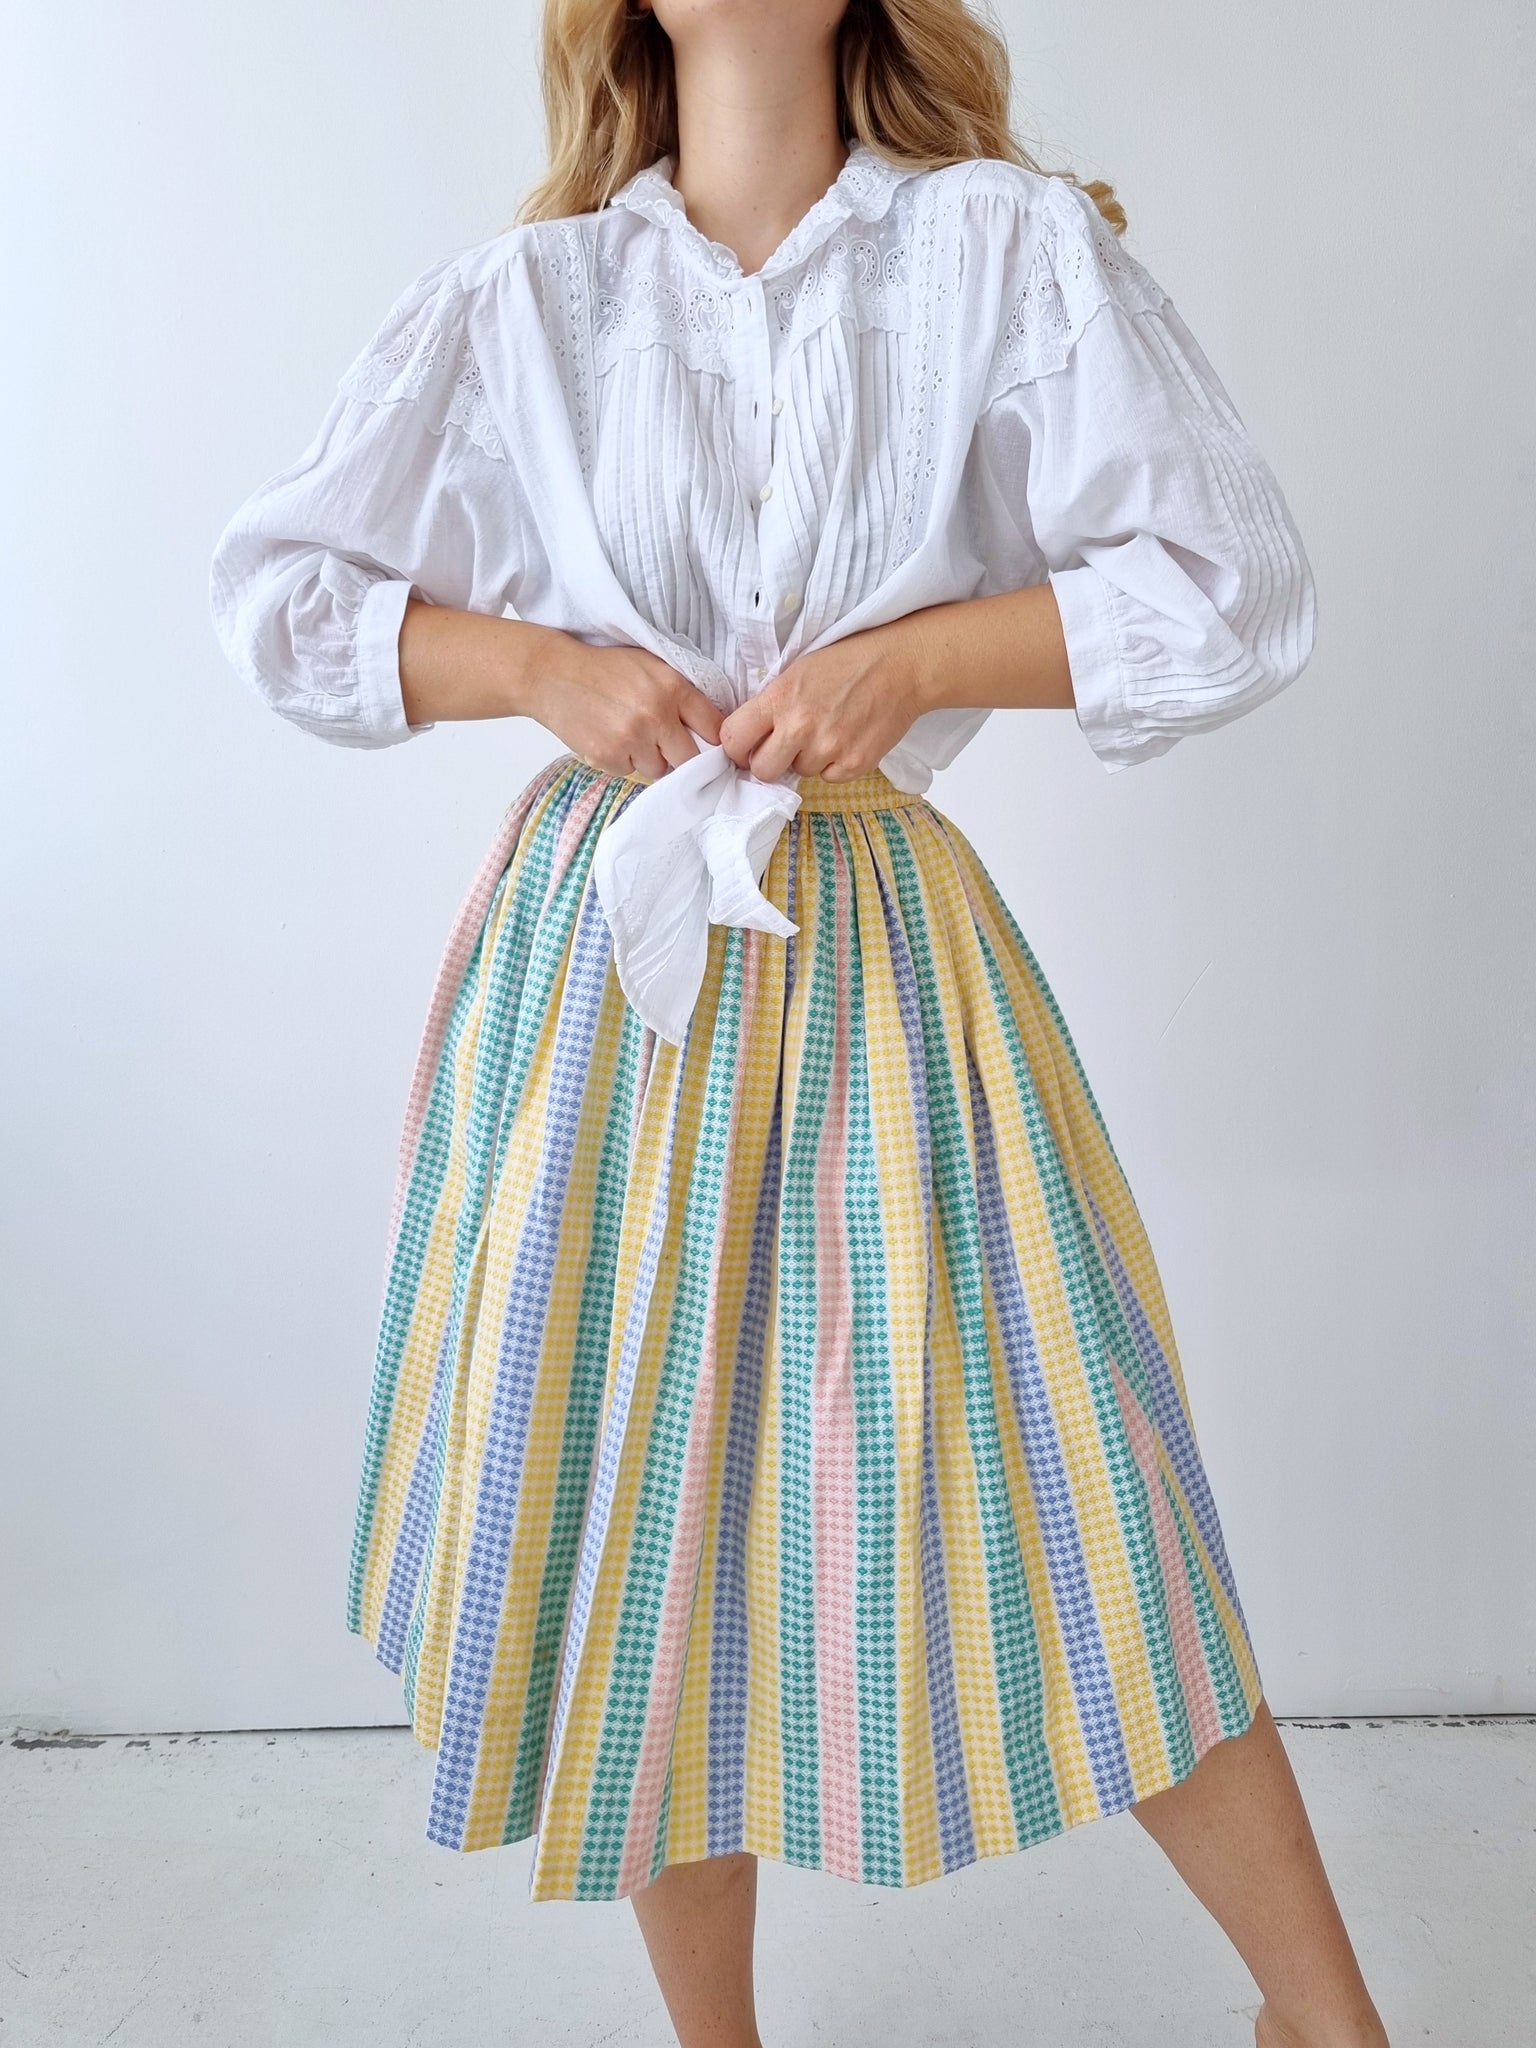 Handmade Pastel Midi Skirt (Special Price)